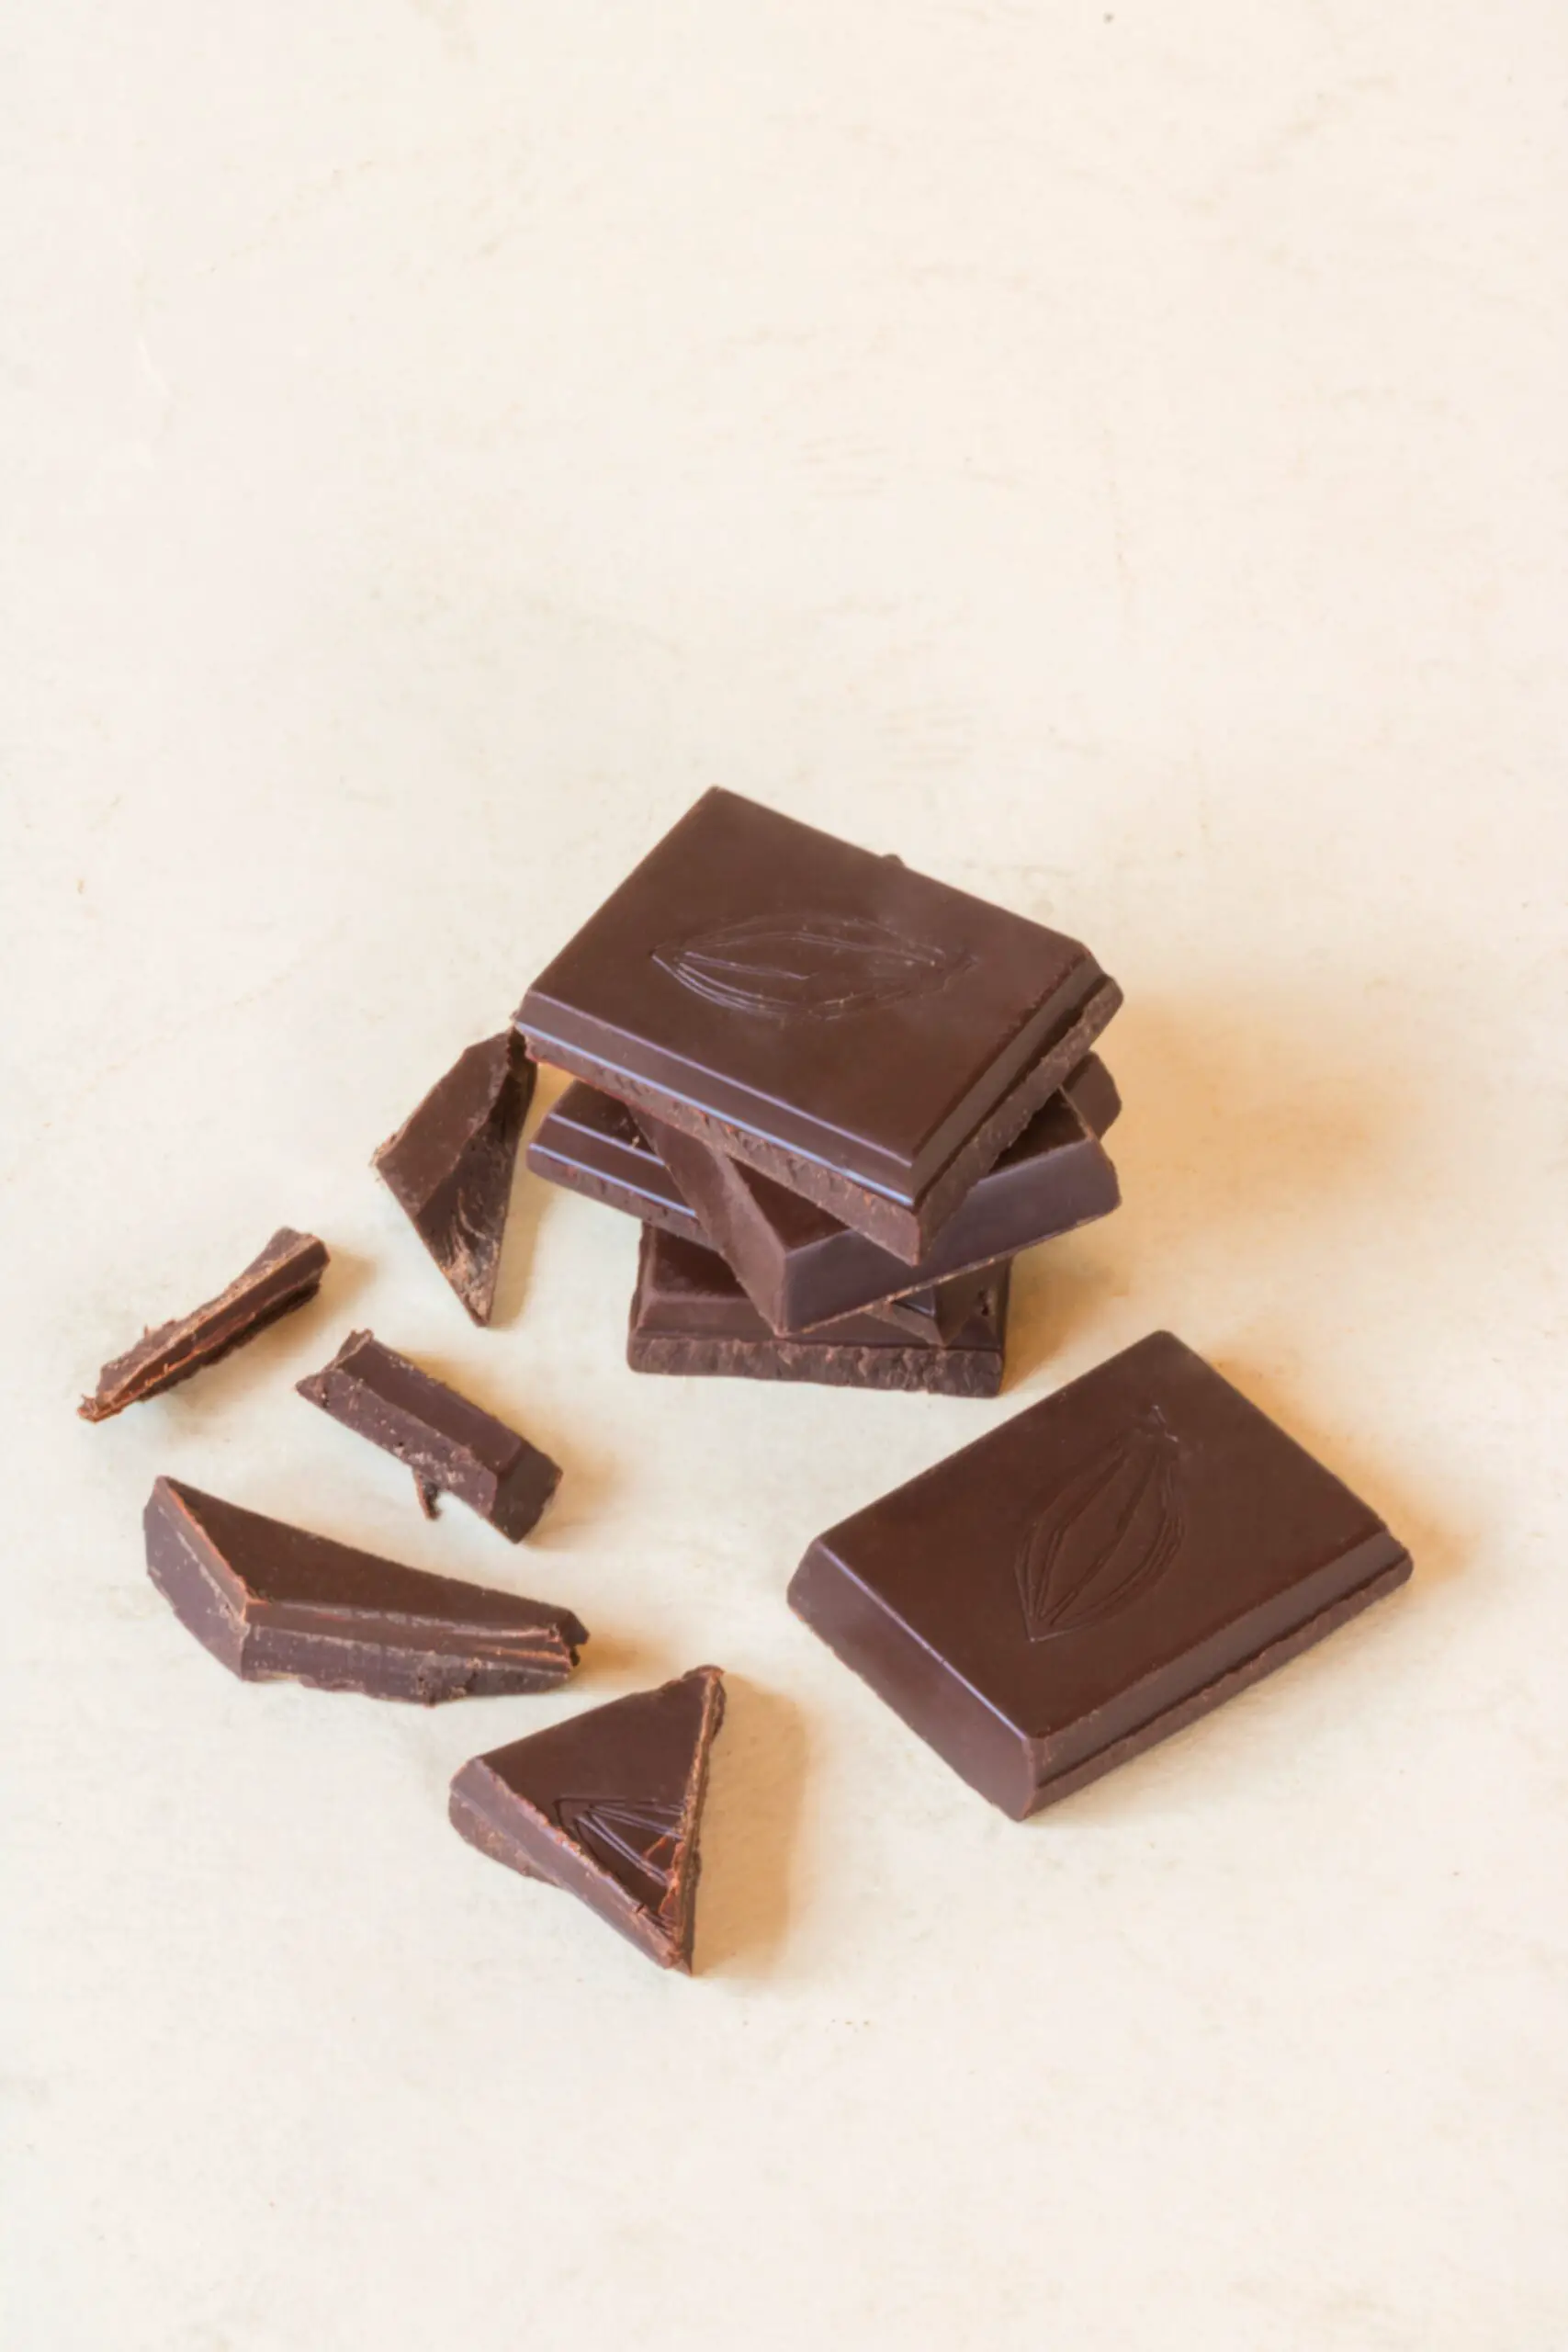 La agridulce historia del chocolate, el producto que conquistó el mundo